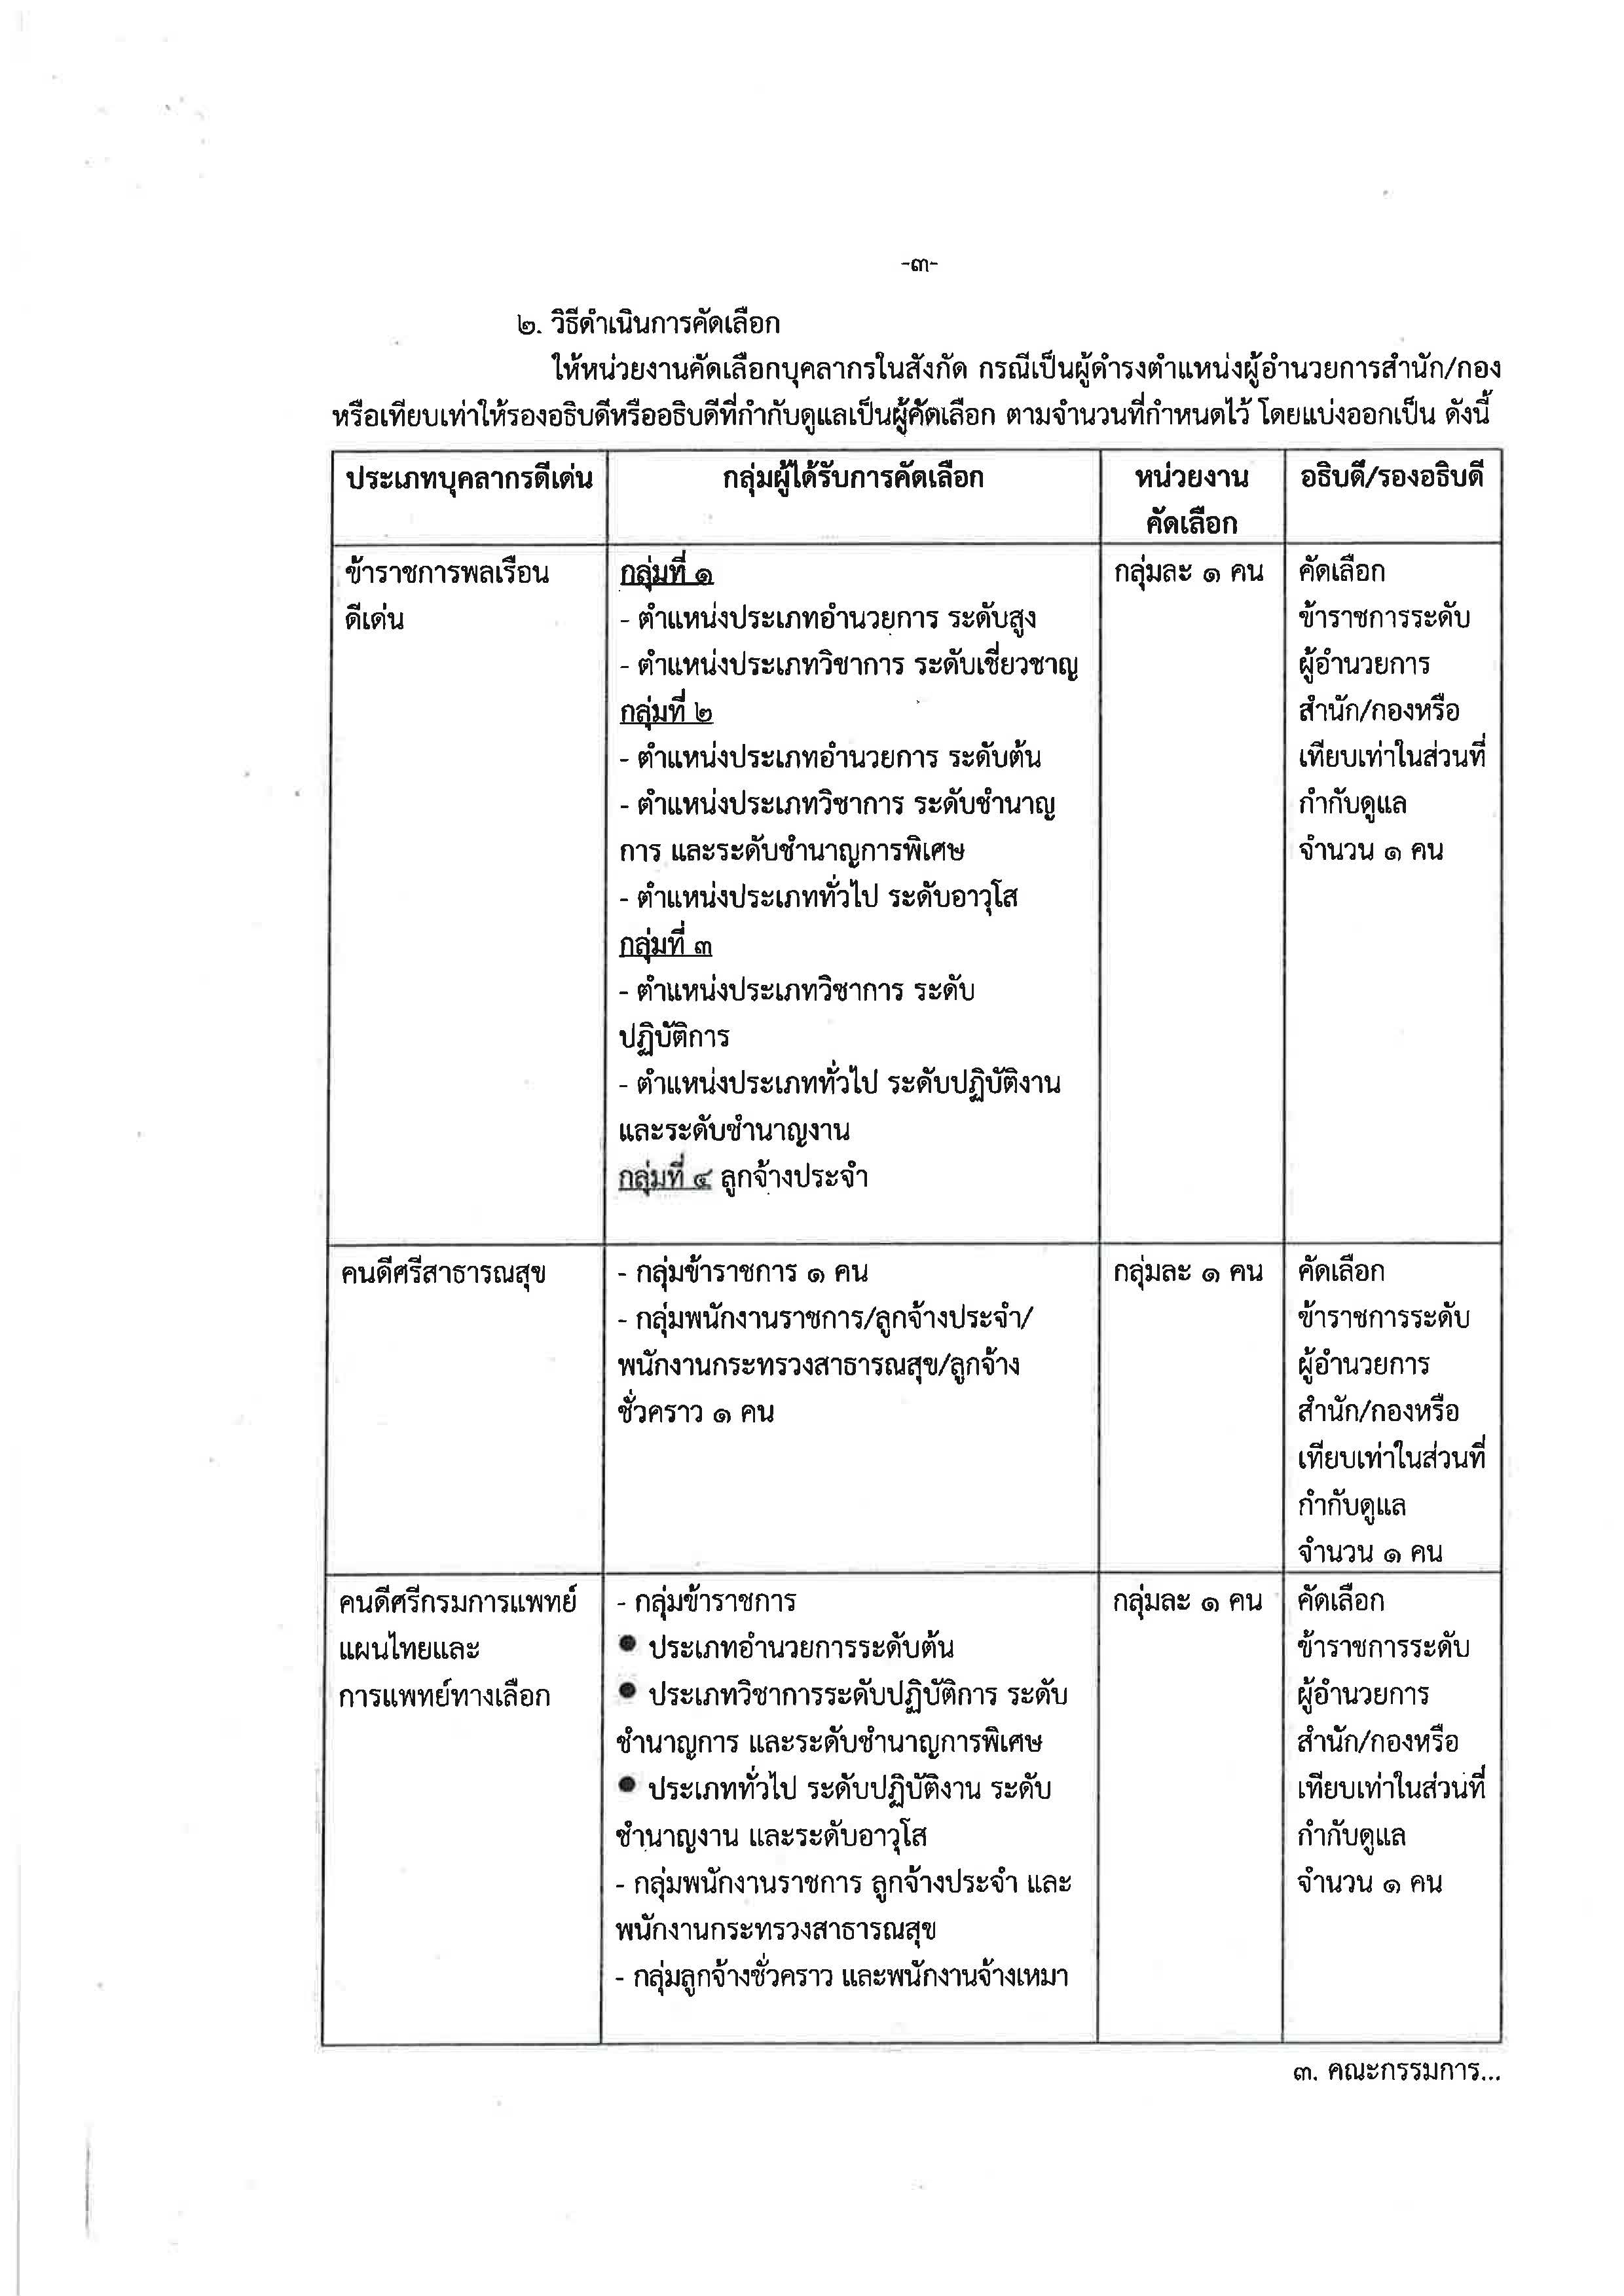 หลกเกณฑการคดเลอกบคลากรดเดน ประจำป กรมการแพทยแผนไทยและการแพทยทางเลอก Page 3